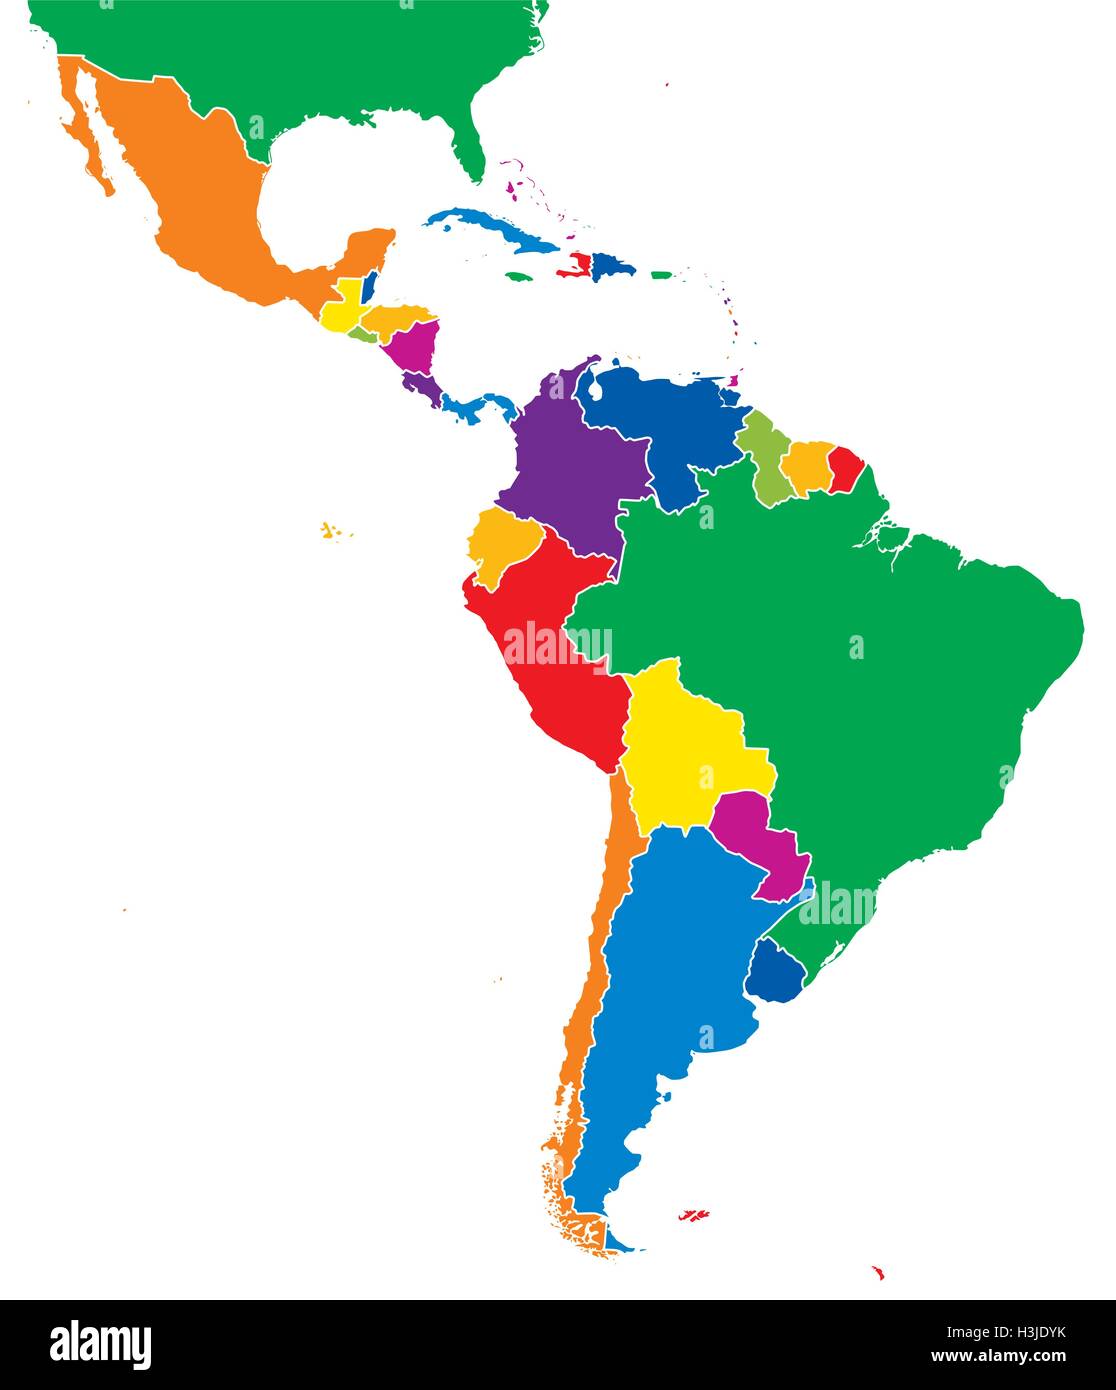 L'Amérique latine seule carte. Tous les pays en différentes couleurs intenses et complète avec les frontières nationales. Vecteur. Illustration de Vecteur